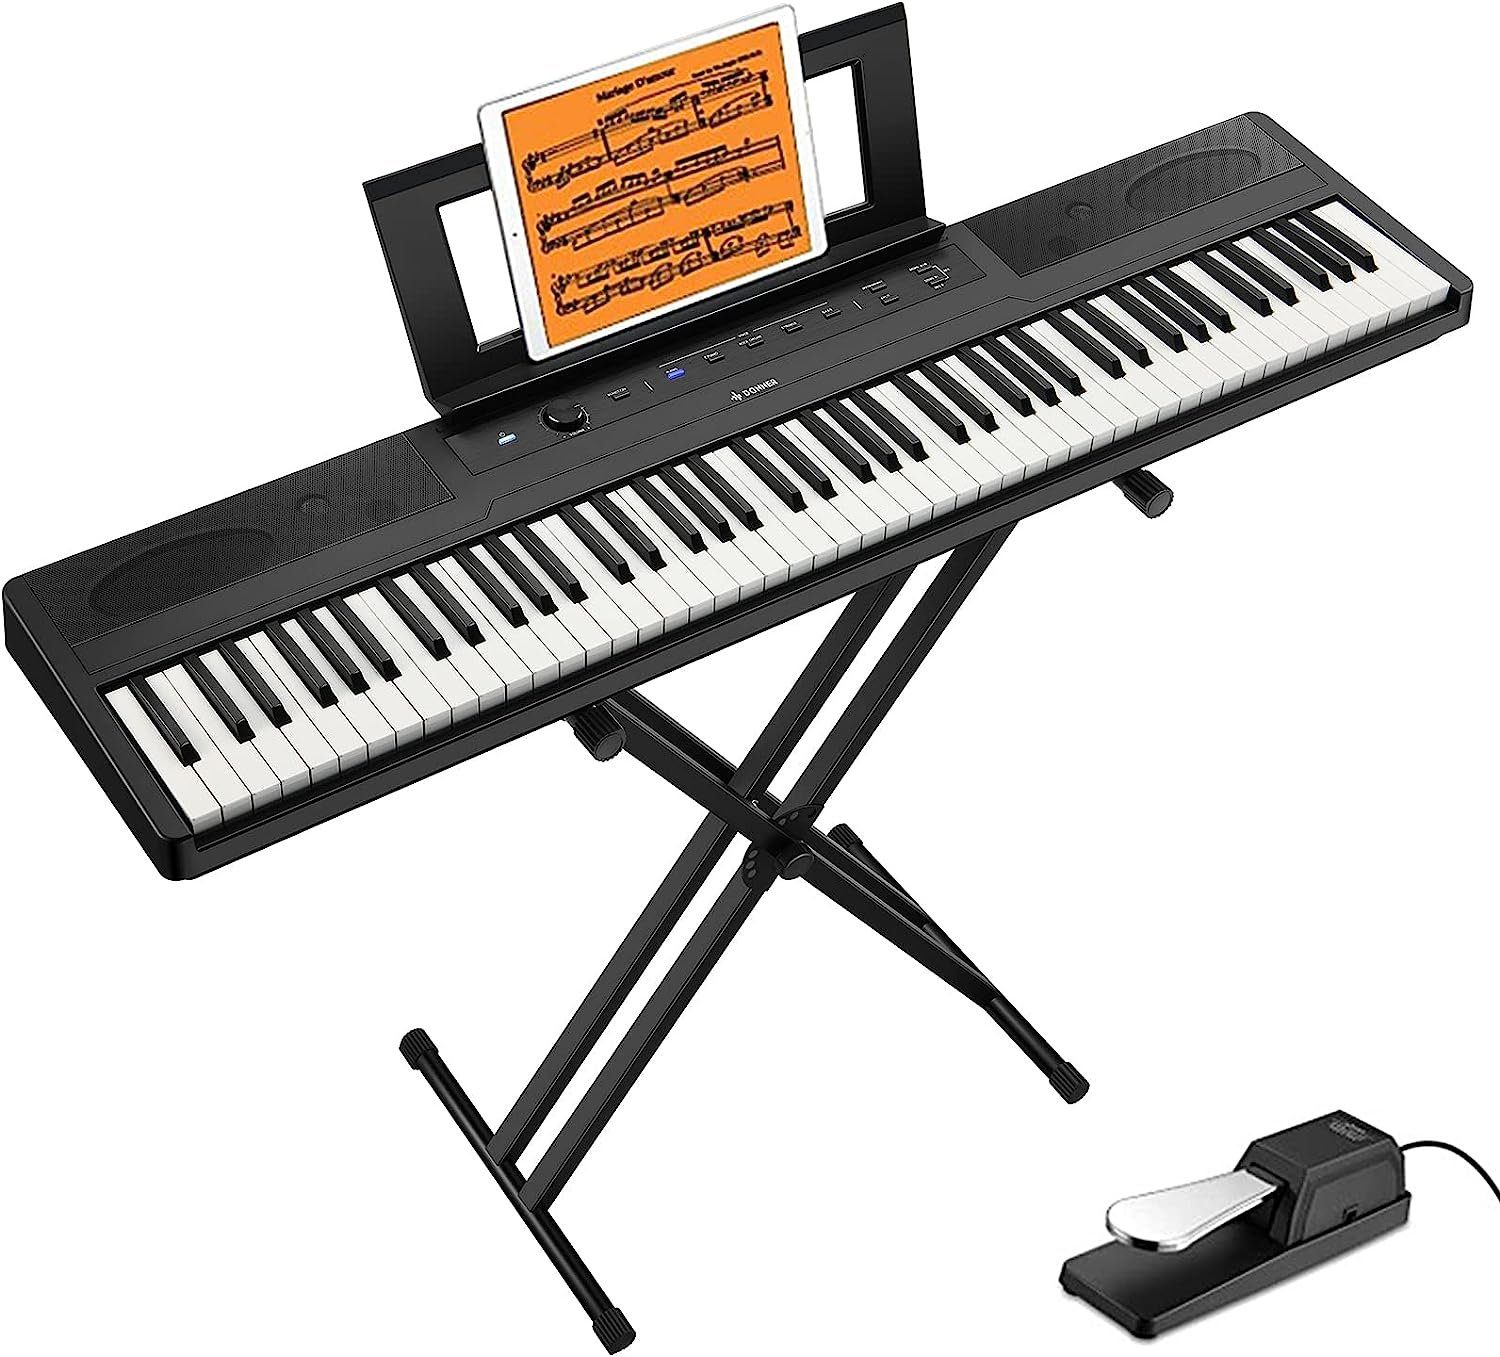 Donner Home-Keyboard DEP-45 E Piano Digital Piano Keyboard 88 tasten (1x  Keyboard, 1x Ständer, 1x Sustain-Pedal), mit Pedal,ideal fur Piano -Einsteiger,Multimedia-Bedienfeld,Ständer